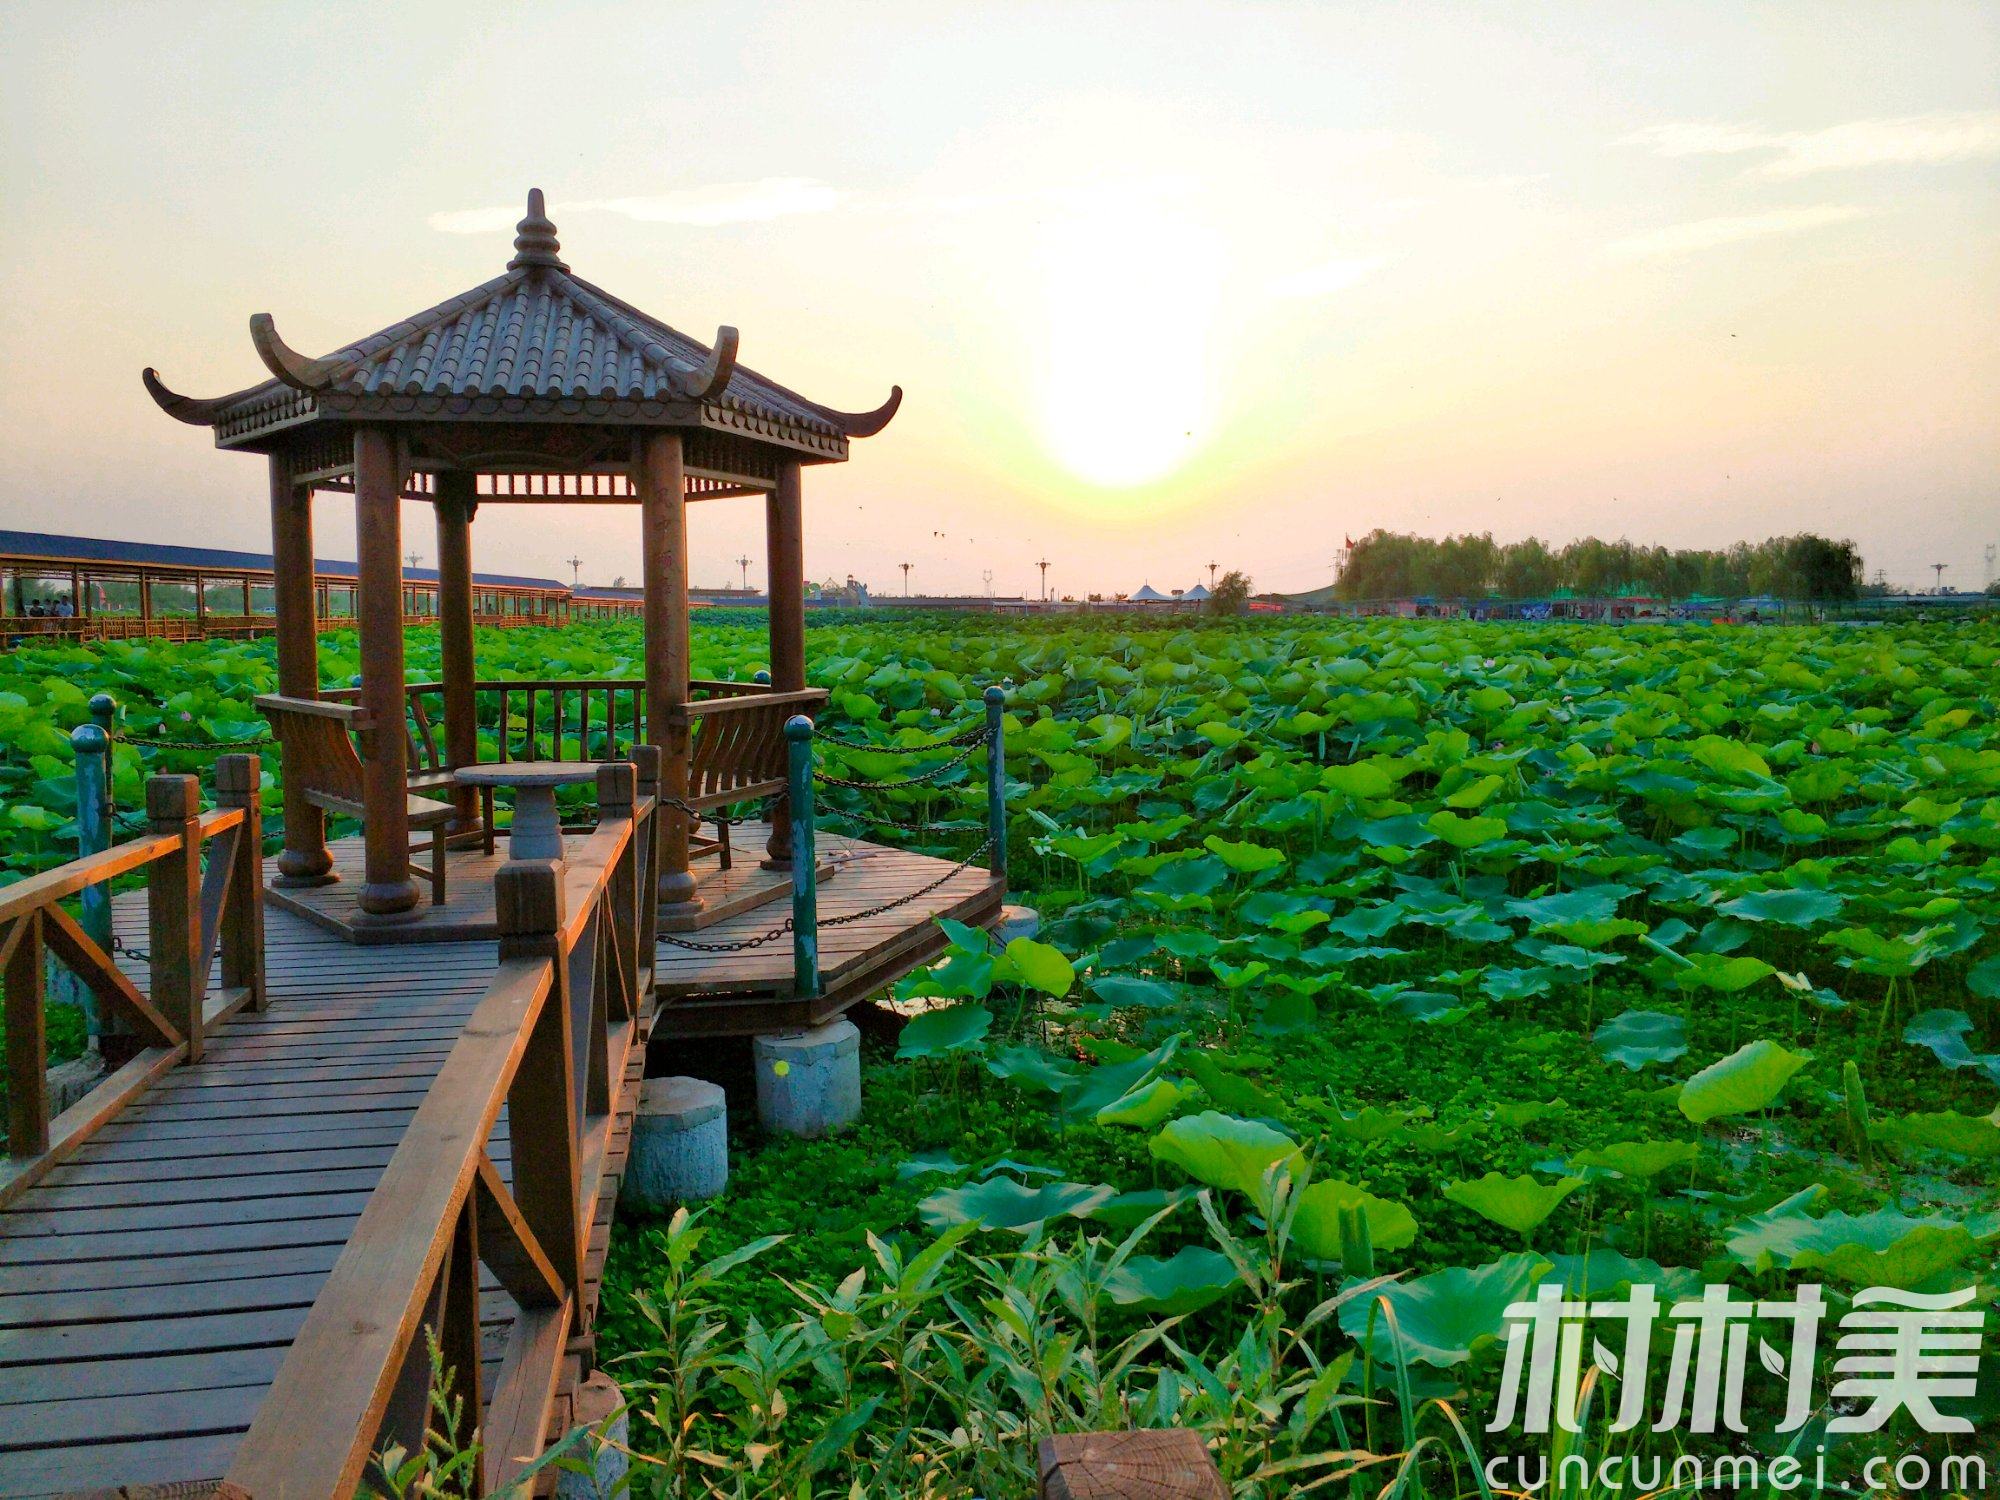 荷你同行——江城十大经典赏荷线路Enjoy Your Stay in Wuhan with the Lotus — Top Ten Lotus Appreciation Routes in Wuhan